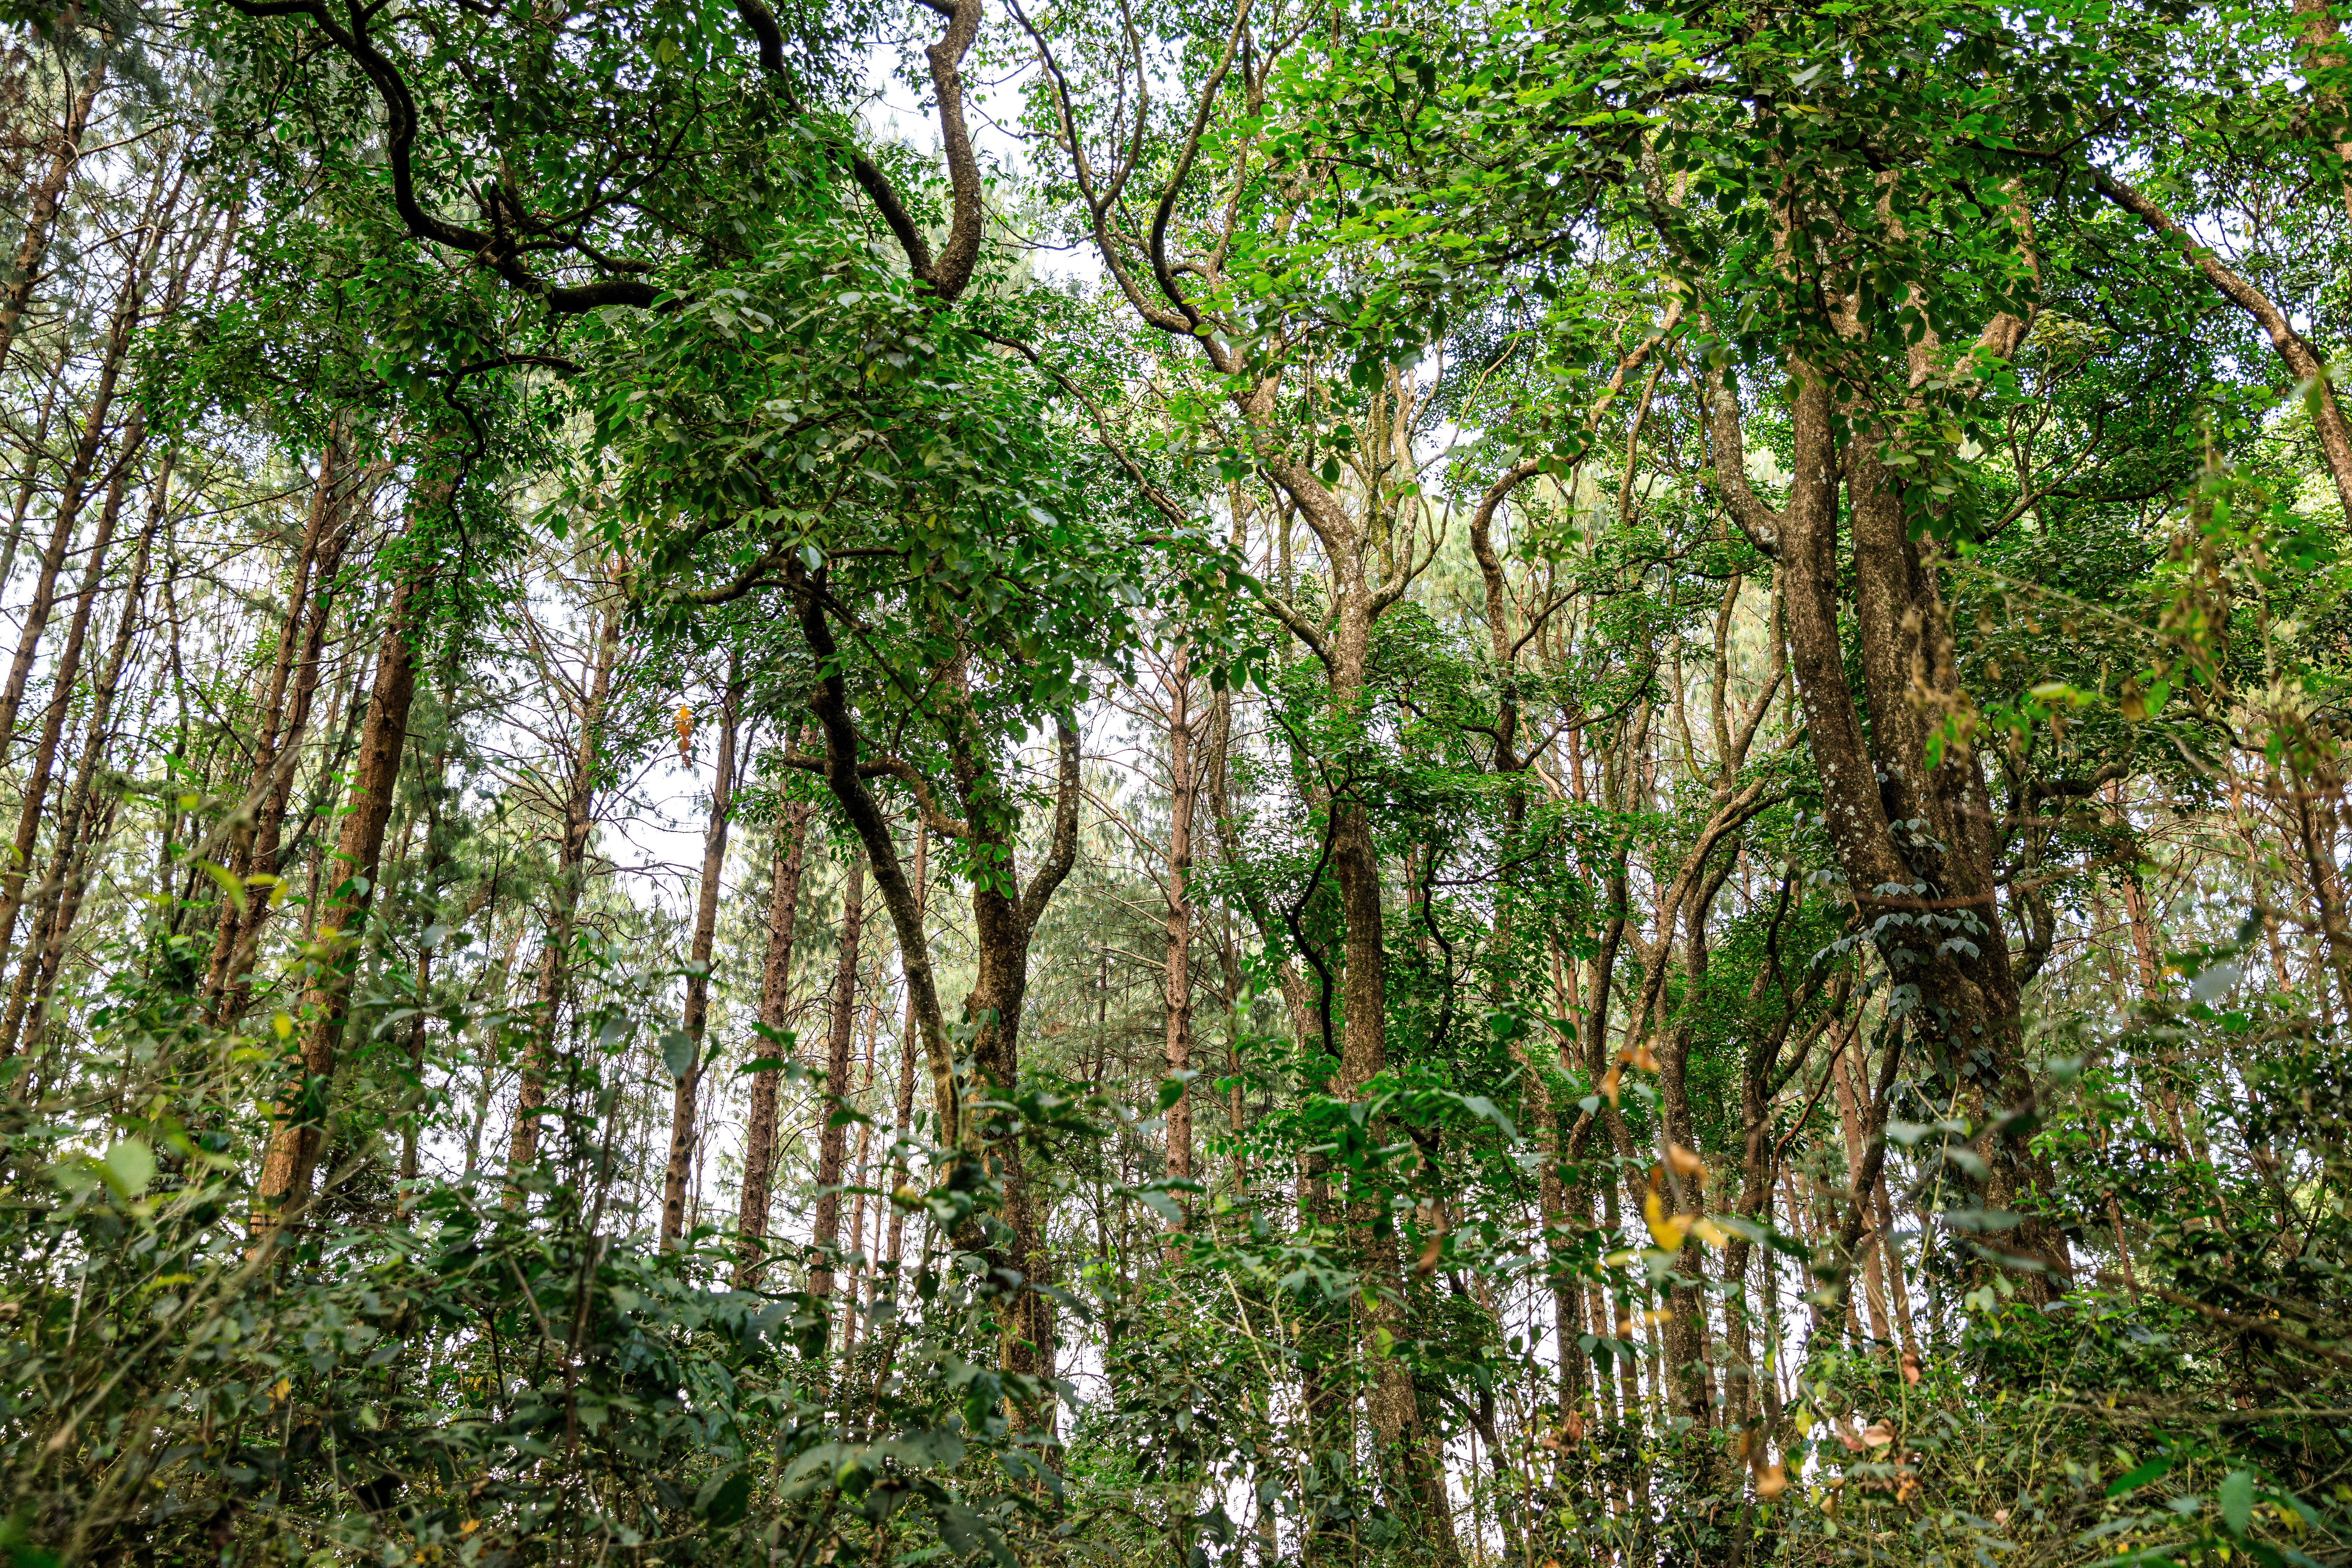 Kenya forest